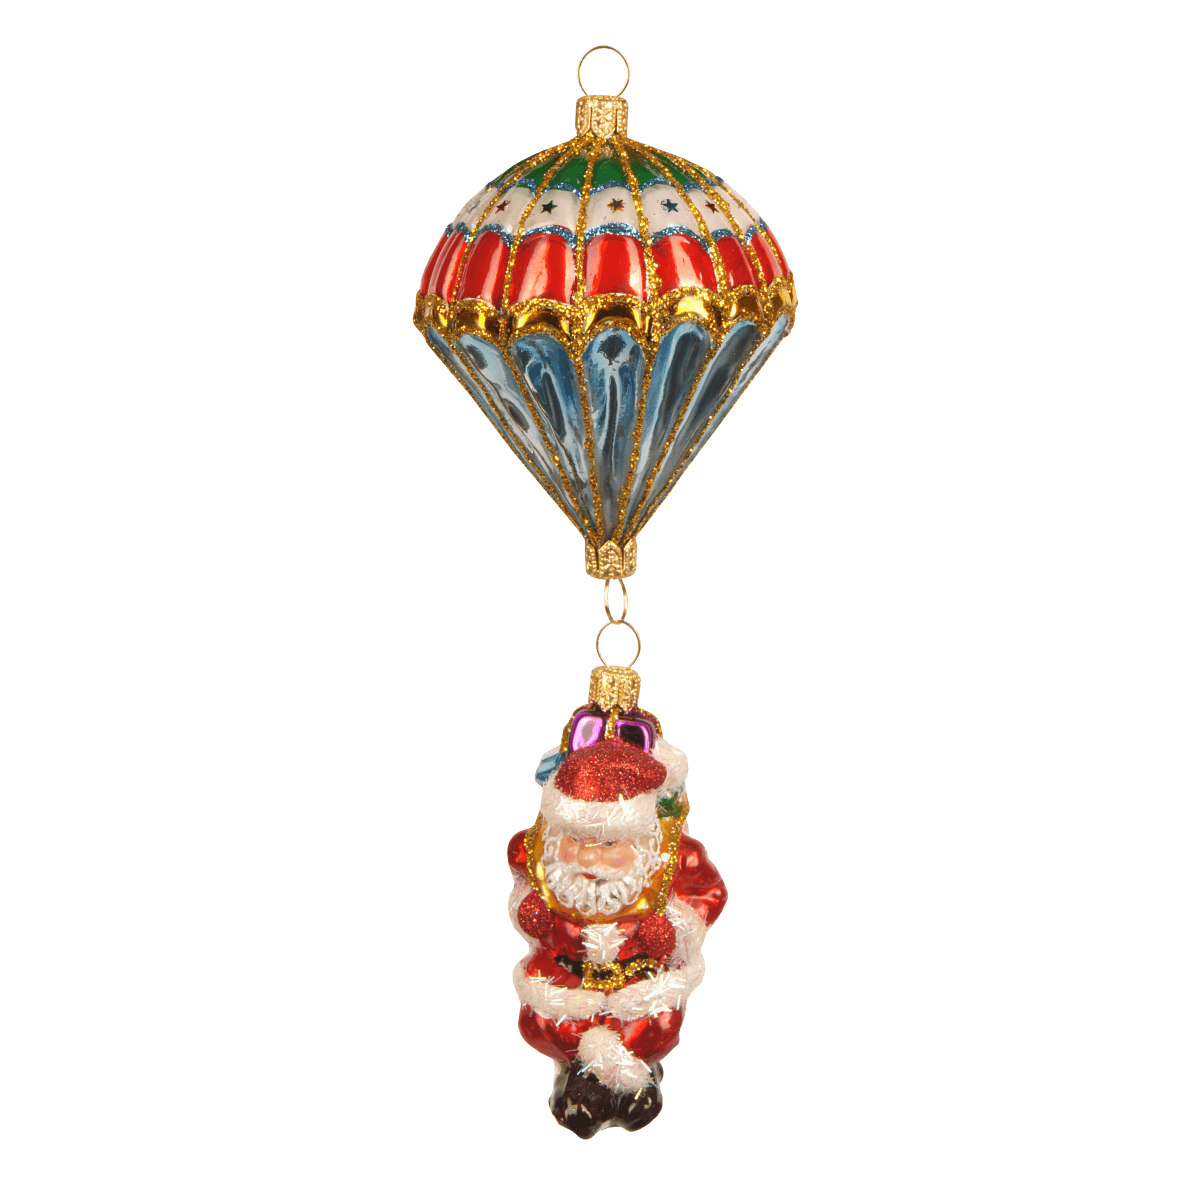 Viv! Home Luxuries Kerstornament - Kerstman parachute - mond geblazen glas - rood goud blauw groen - 18cm - Viv! Home Luxuries